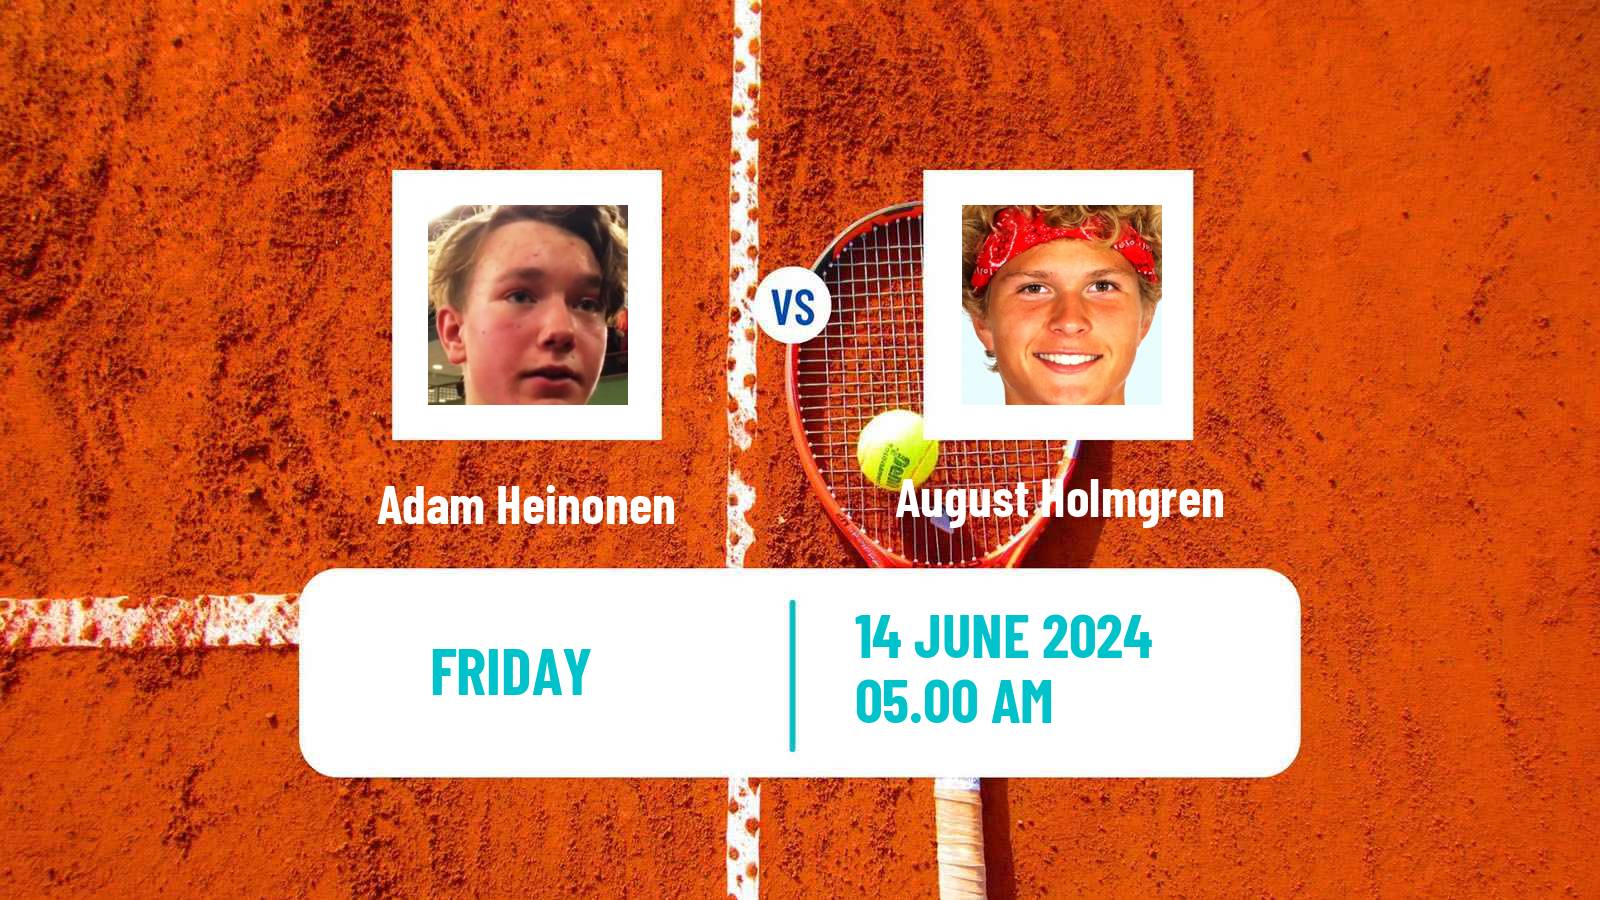 Tennis ITF M25 Aarhus Men Adam Heinonen - August Holmgren